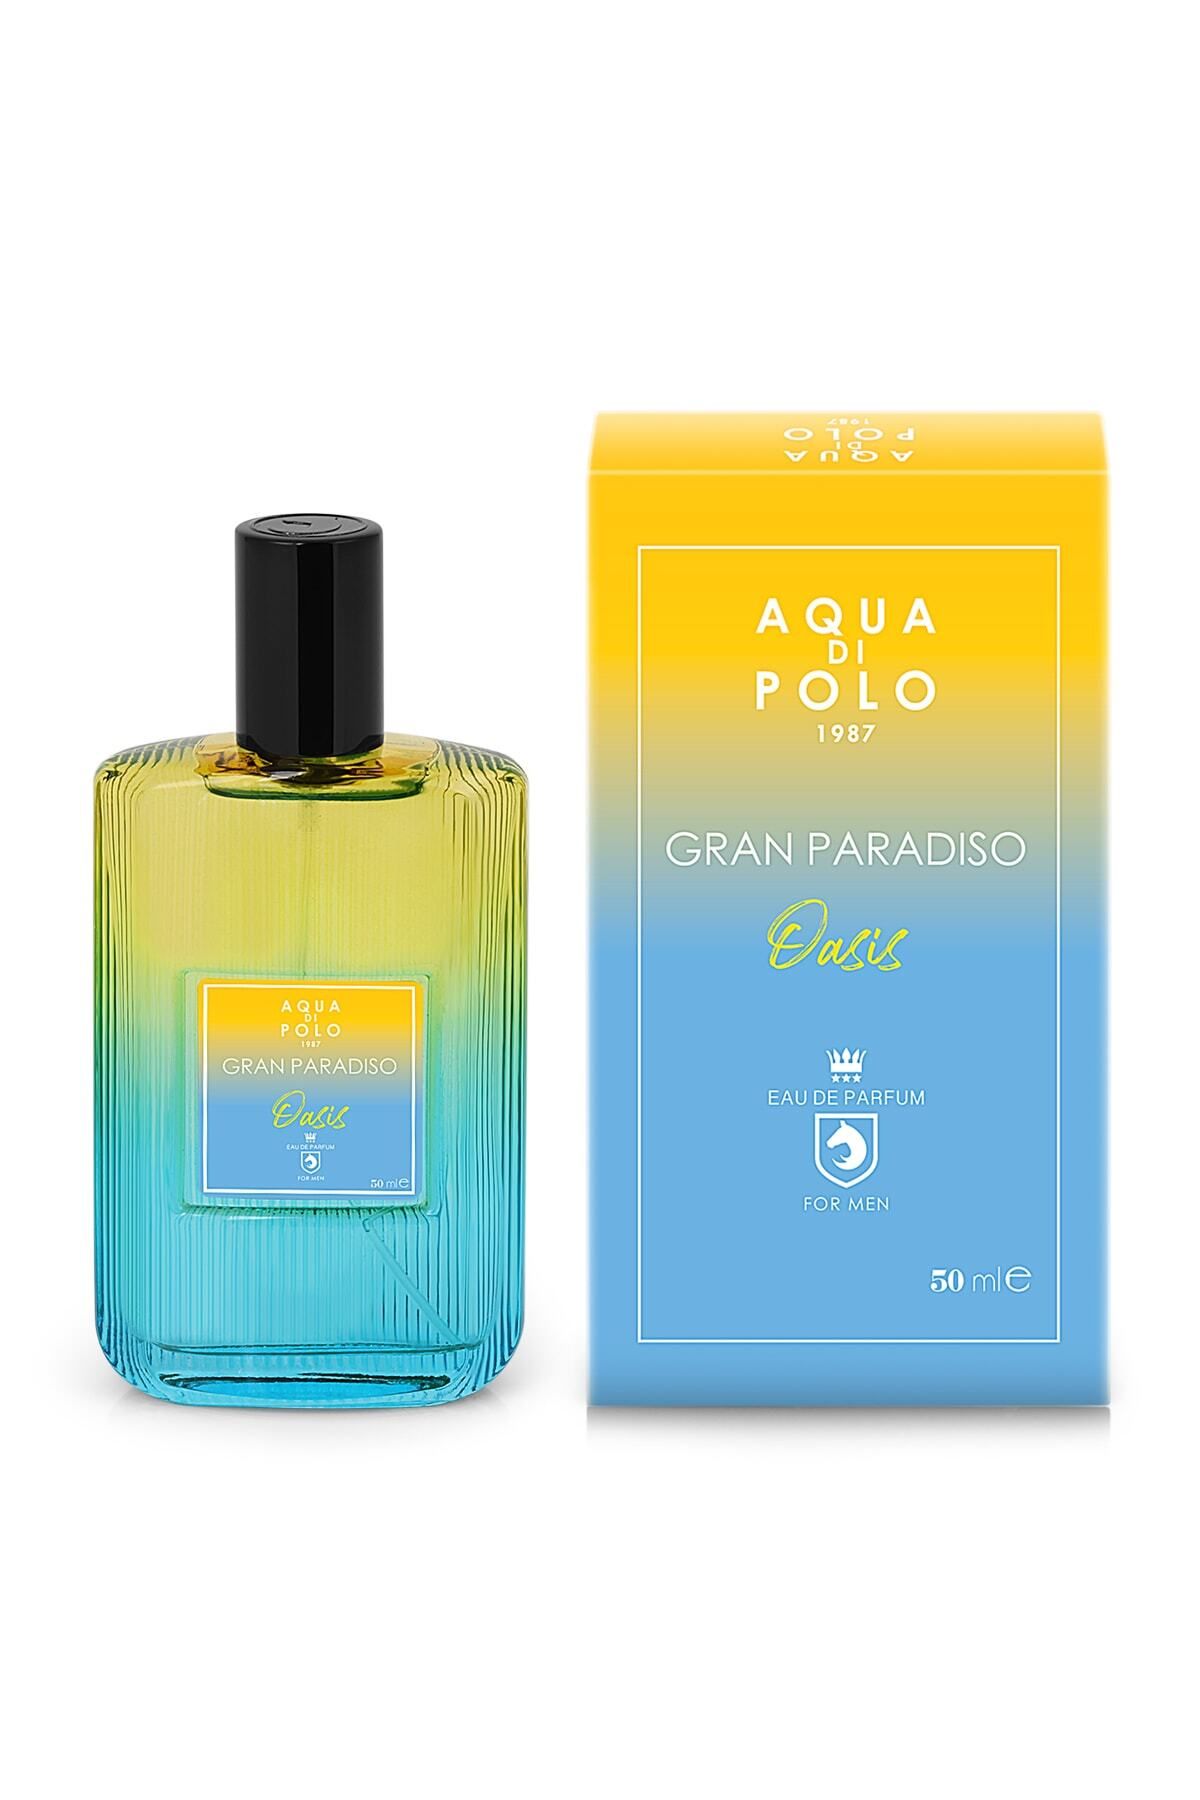 Aqua Di Polo 1987 Gran Paradiso Oasis Erkek Parfüm 50 Ml Edp Apcn000504